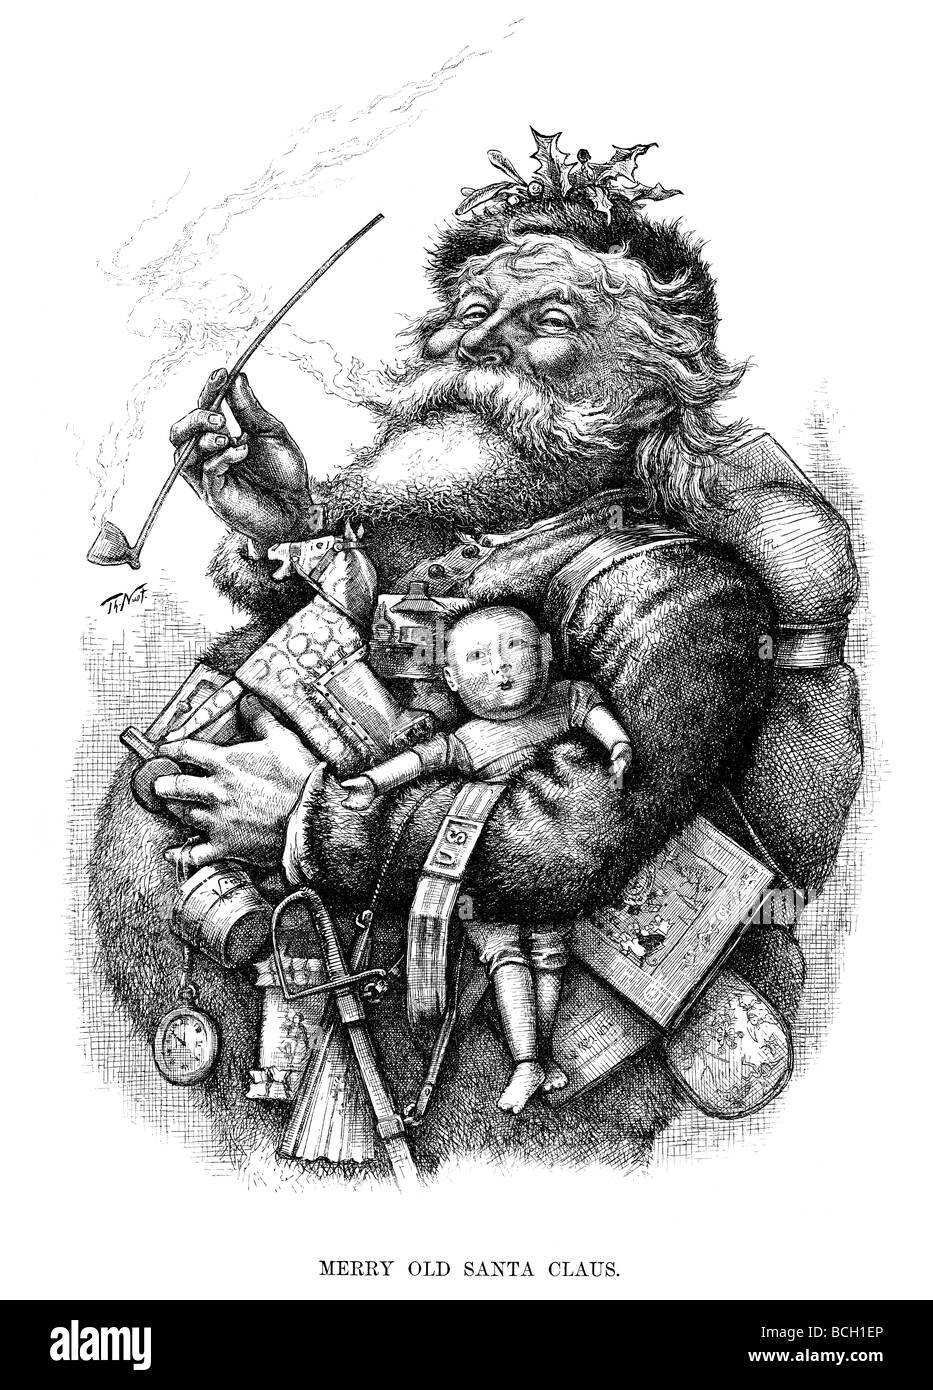 Fröhliche alte Weihnachtsmann. Klassische 19c Holzschnitt von Santa Claus von Thomas Nast. Stockfoto